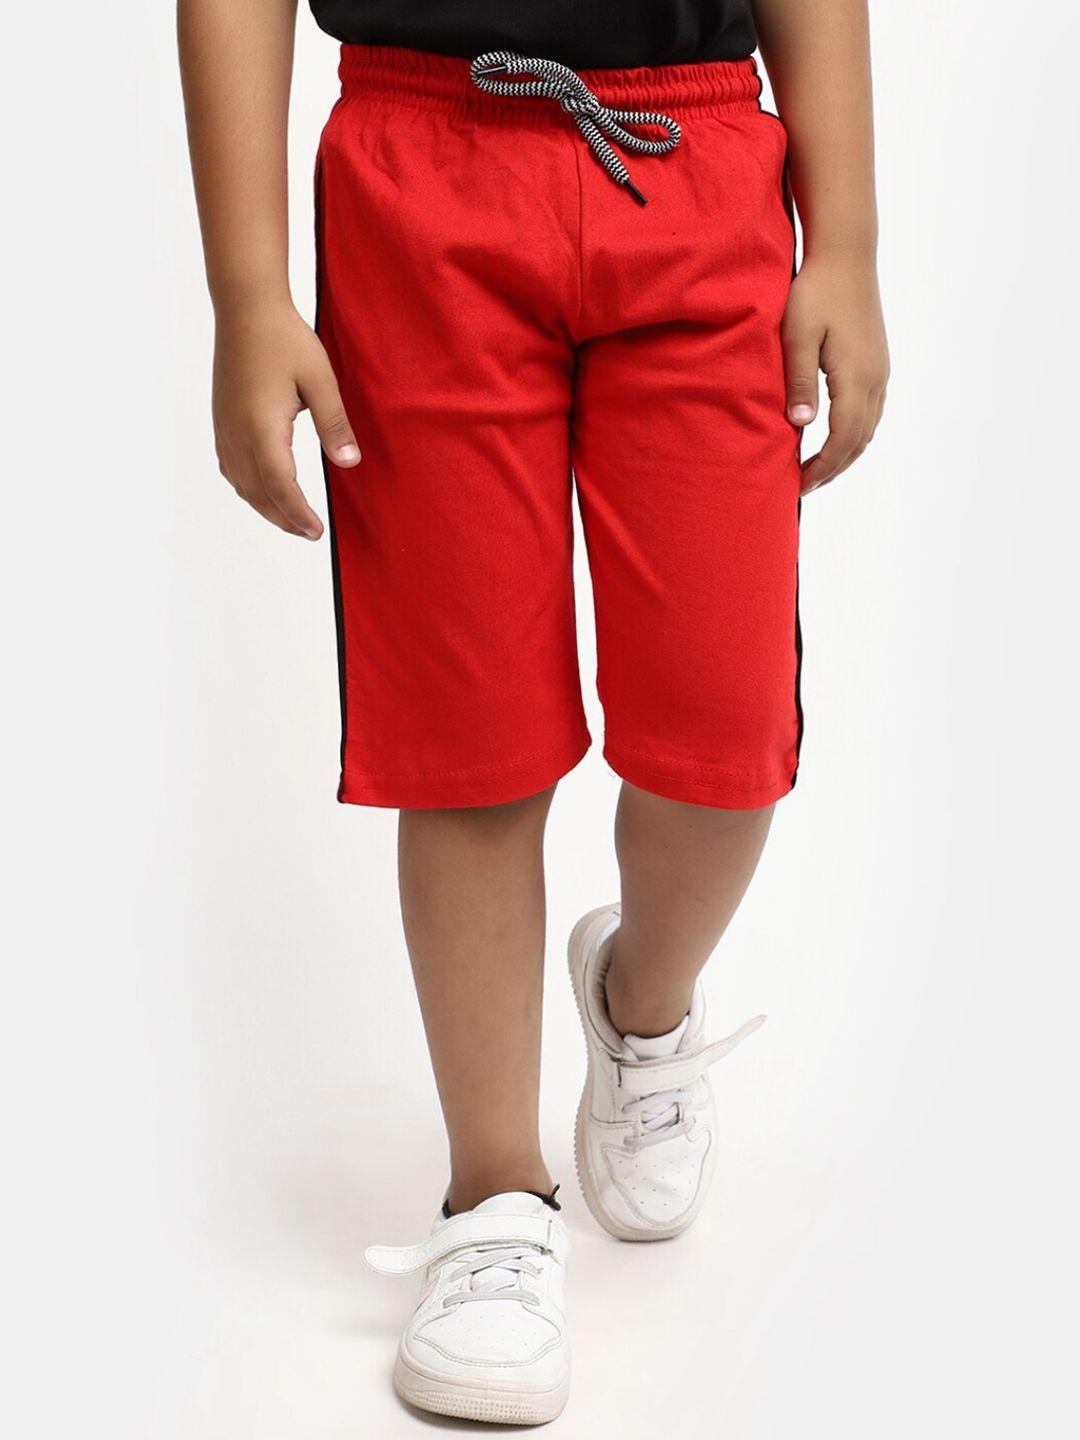 v-mart boys cotton shorts